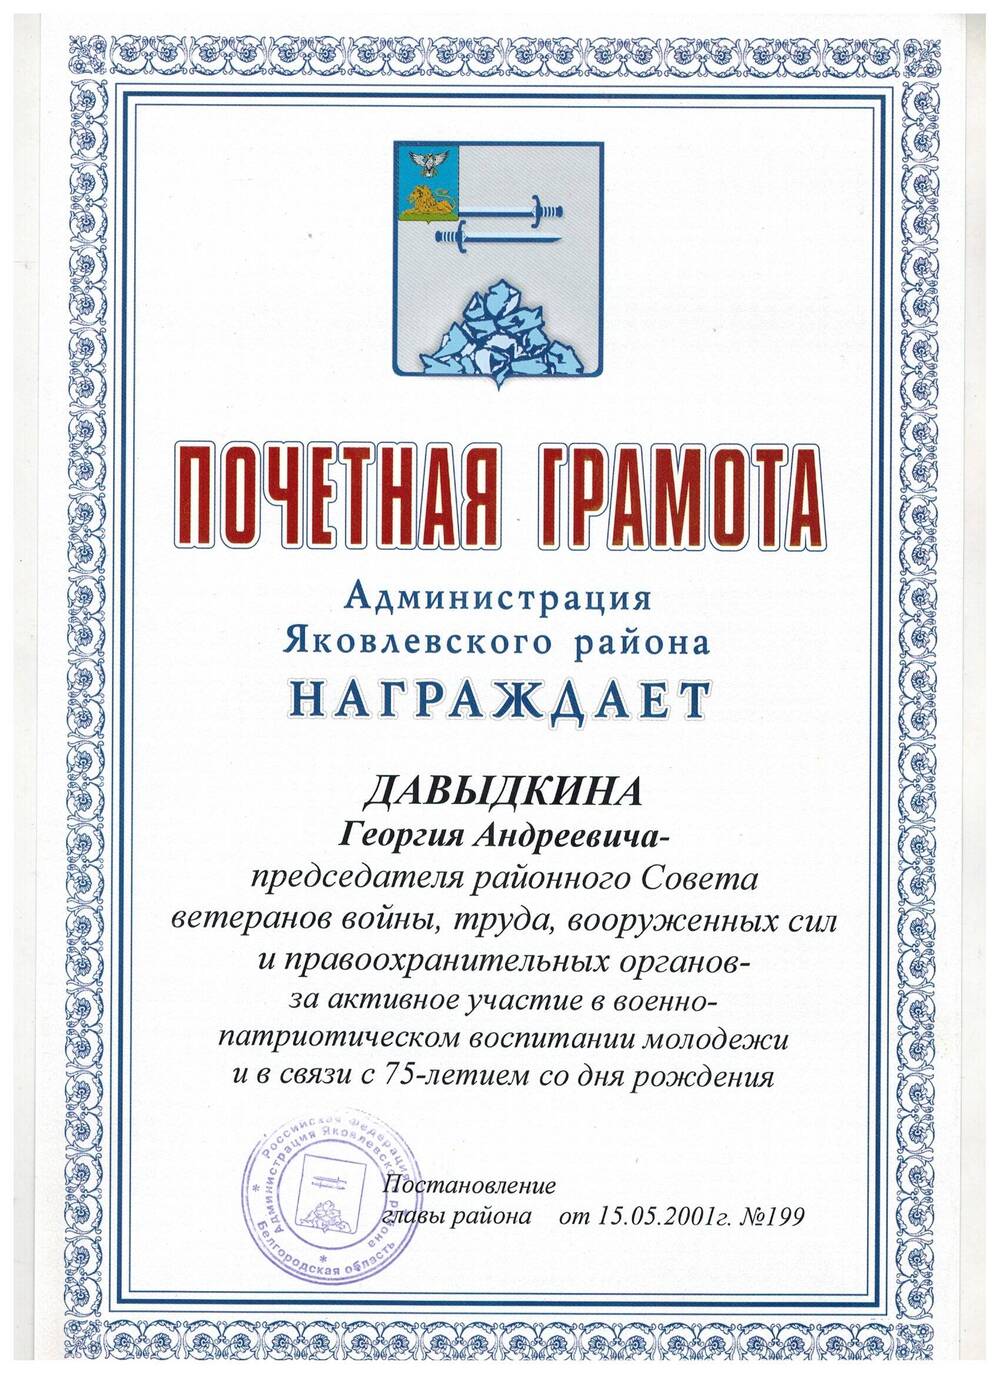 Документ. Почётная грамота Давыдкину Г.А в связи с 75-летием.